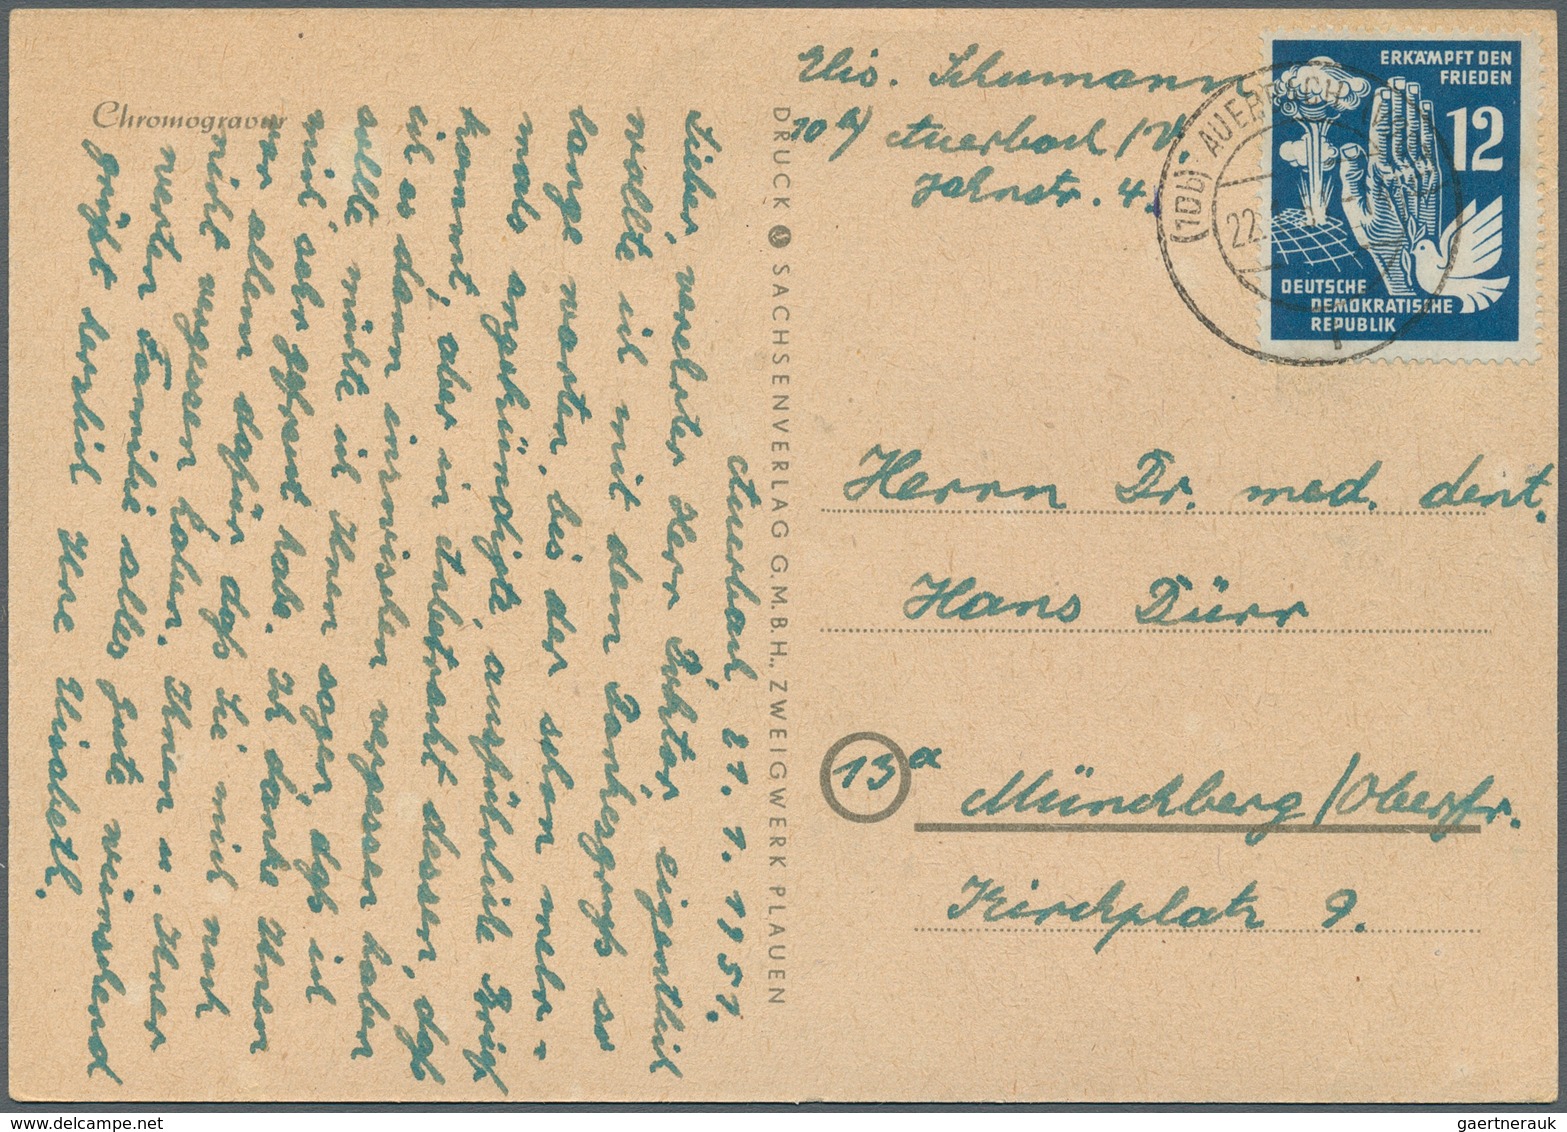 32319 DDR: 1949/1961, vielseitiger Posten von ca. 380 Briefen und Karten aus alter Familien-Korrespondenz,